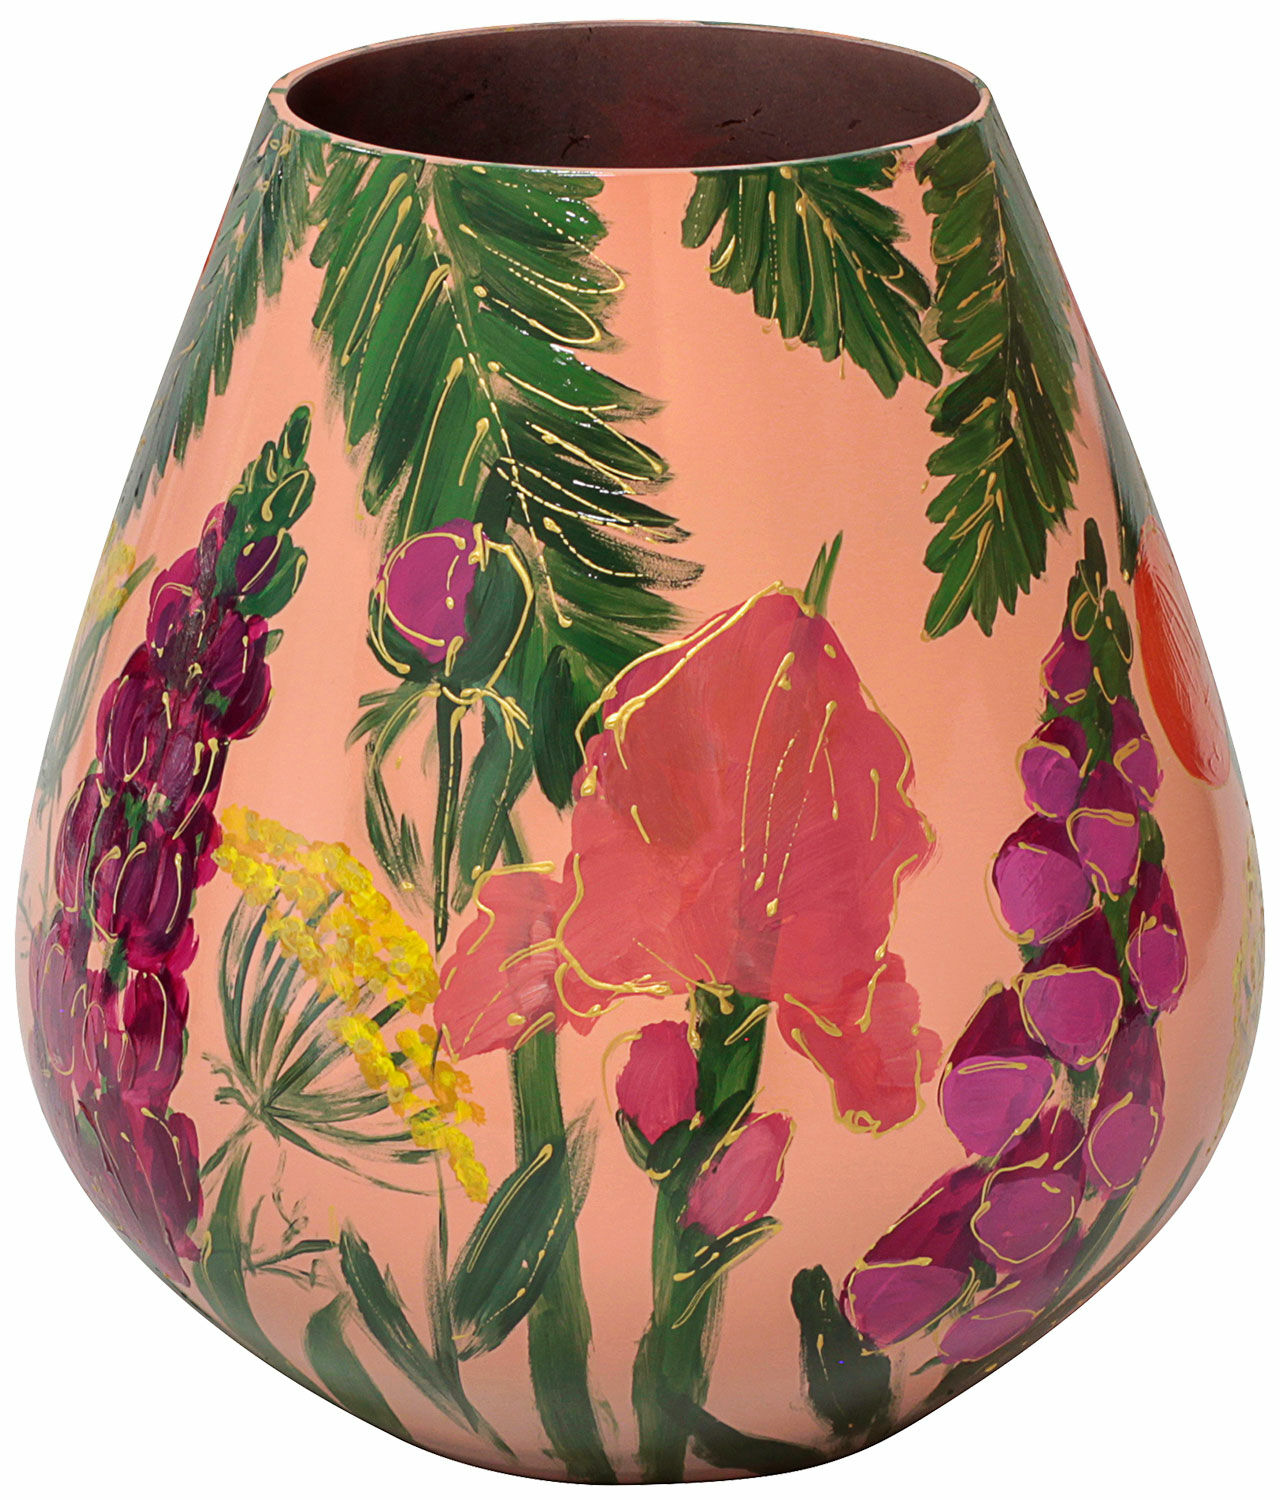 Glass vase "Orange Garden" by Milou van Schaik Martinet